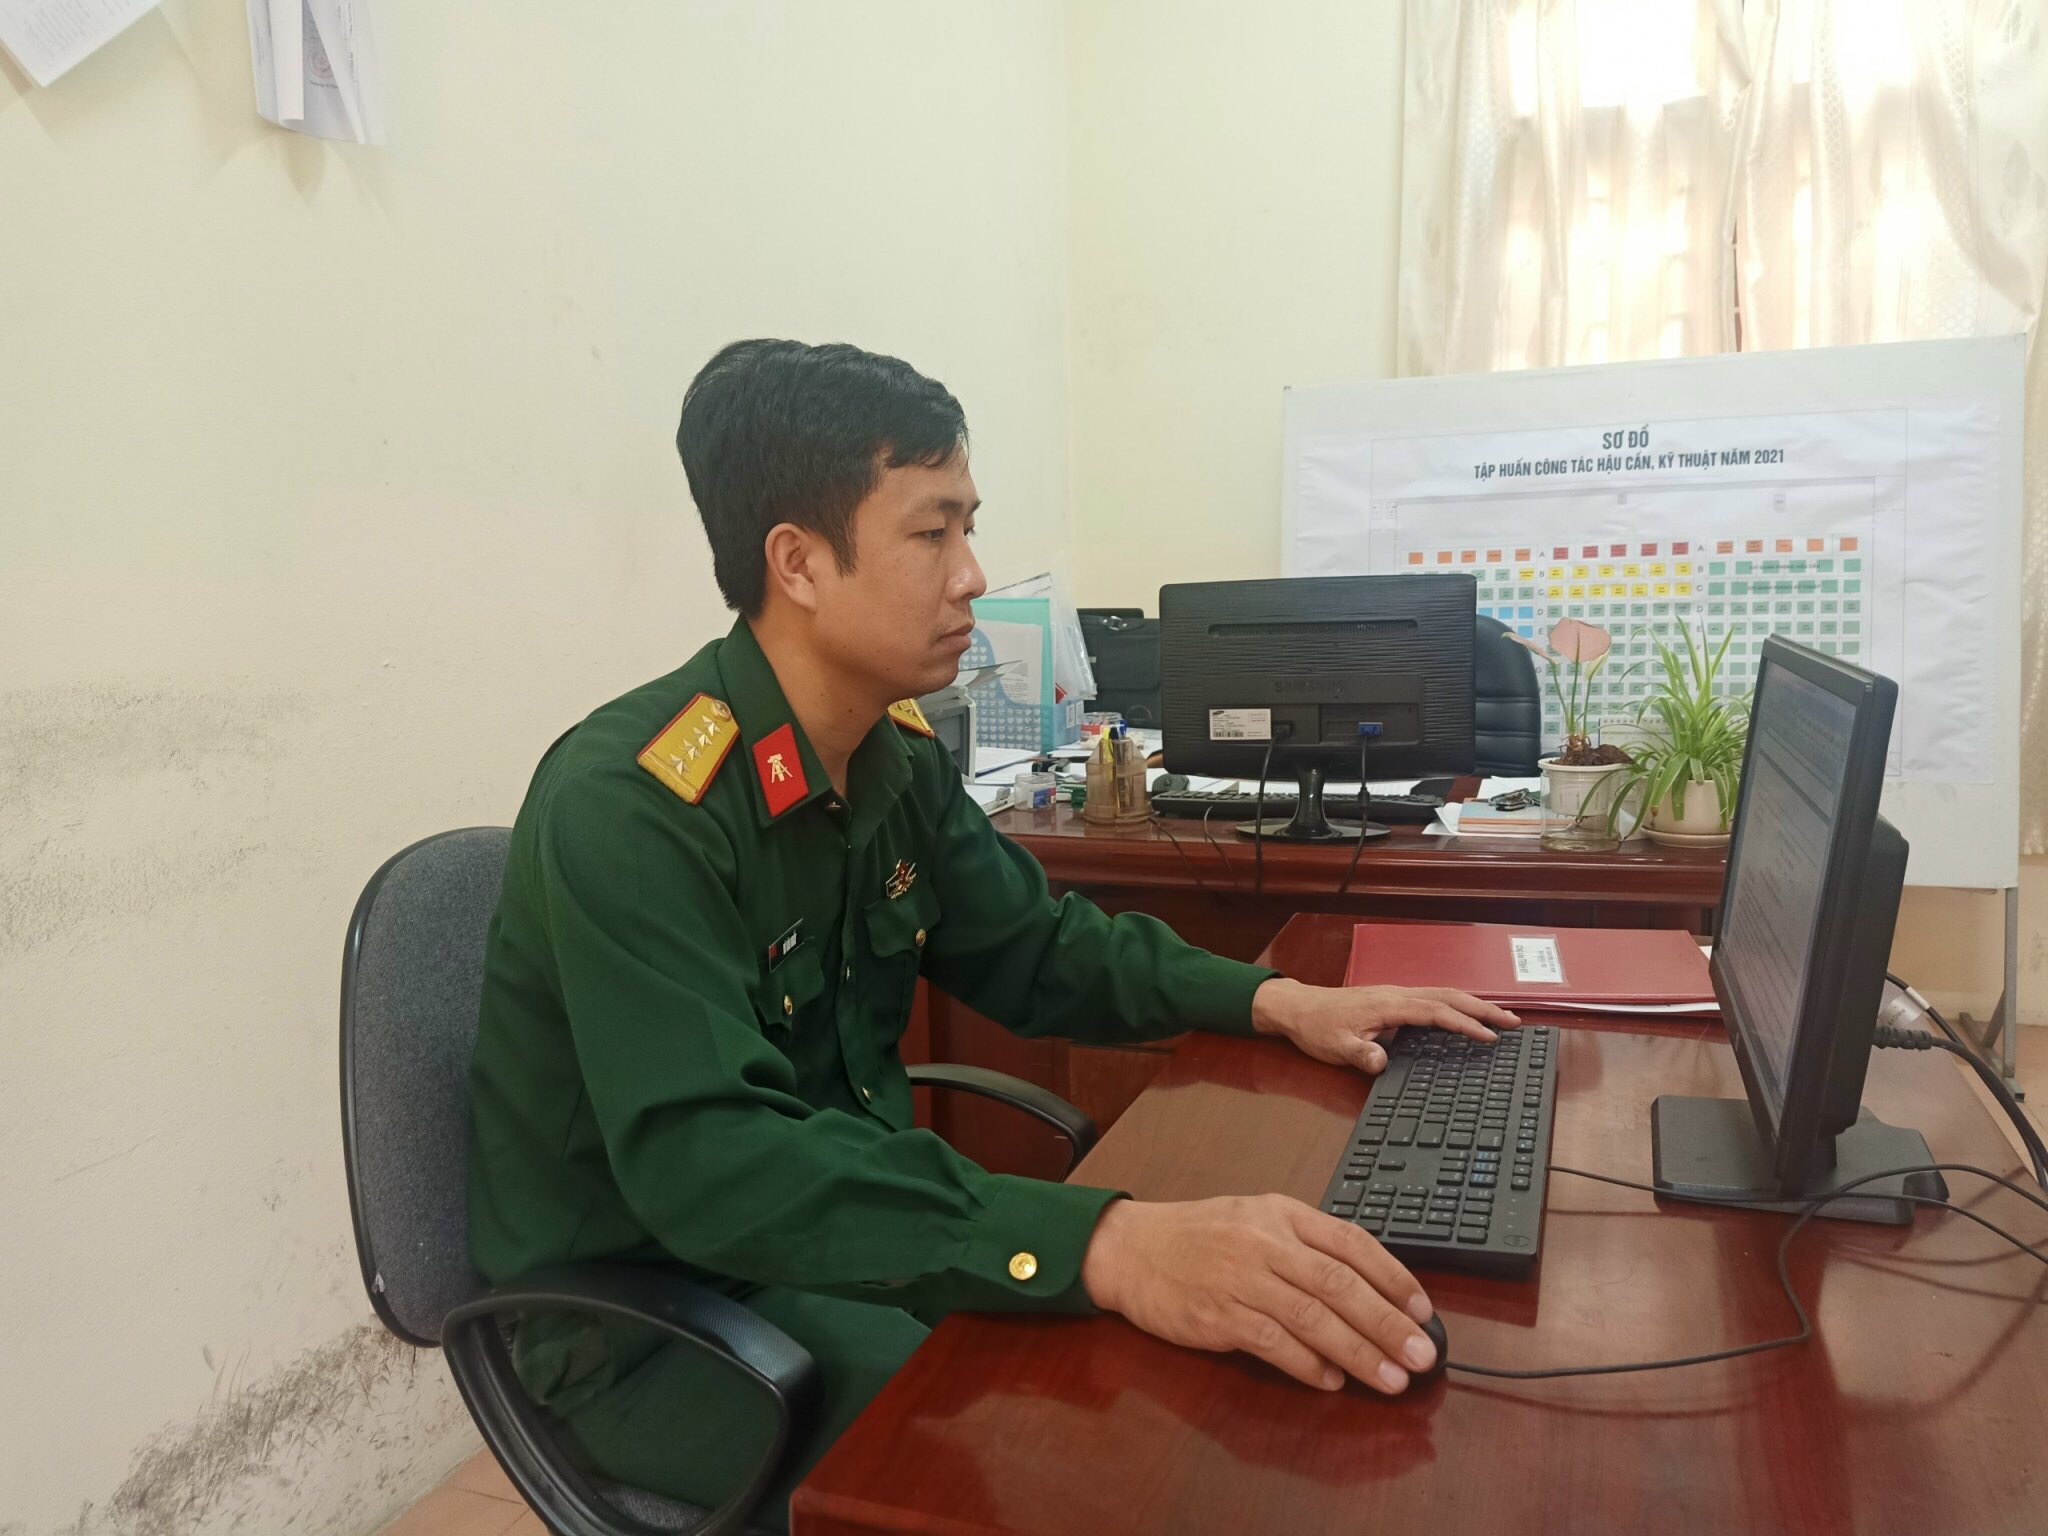 Đại úy Vũ Văn Nhất, trợ lý Xe - Máy, Phòng Kỹ thuật, Bộ CHQS tỉnh đam mê nghiên cứu khoa học kỹ thuật.